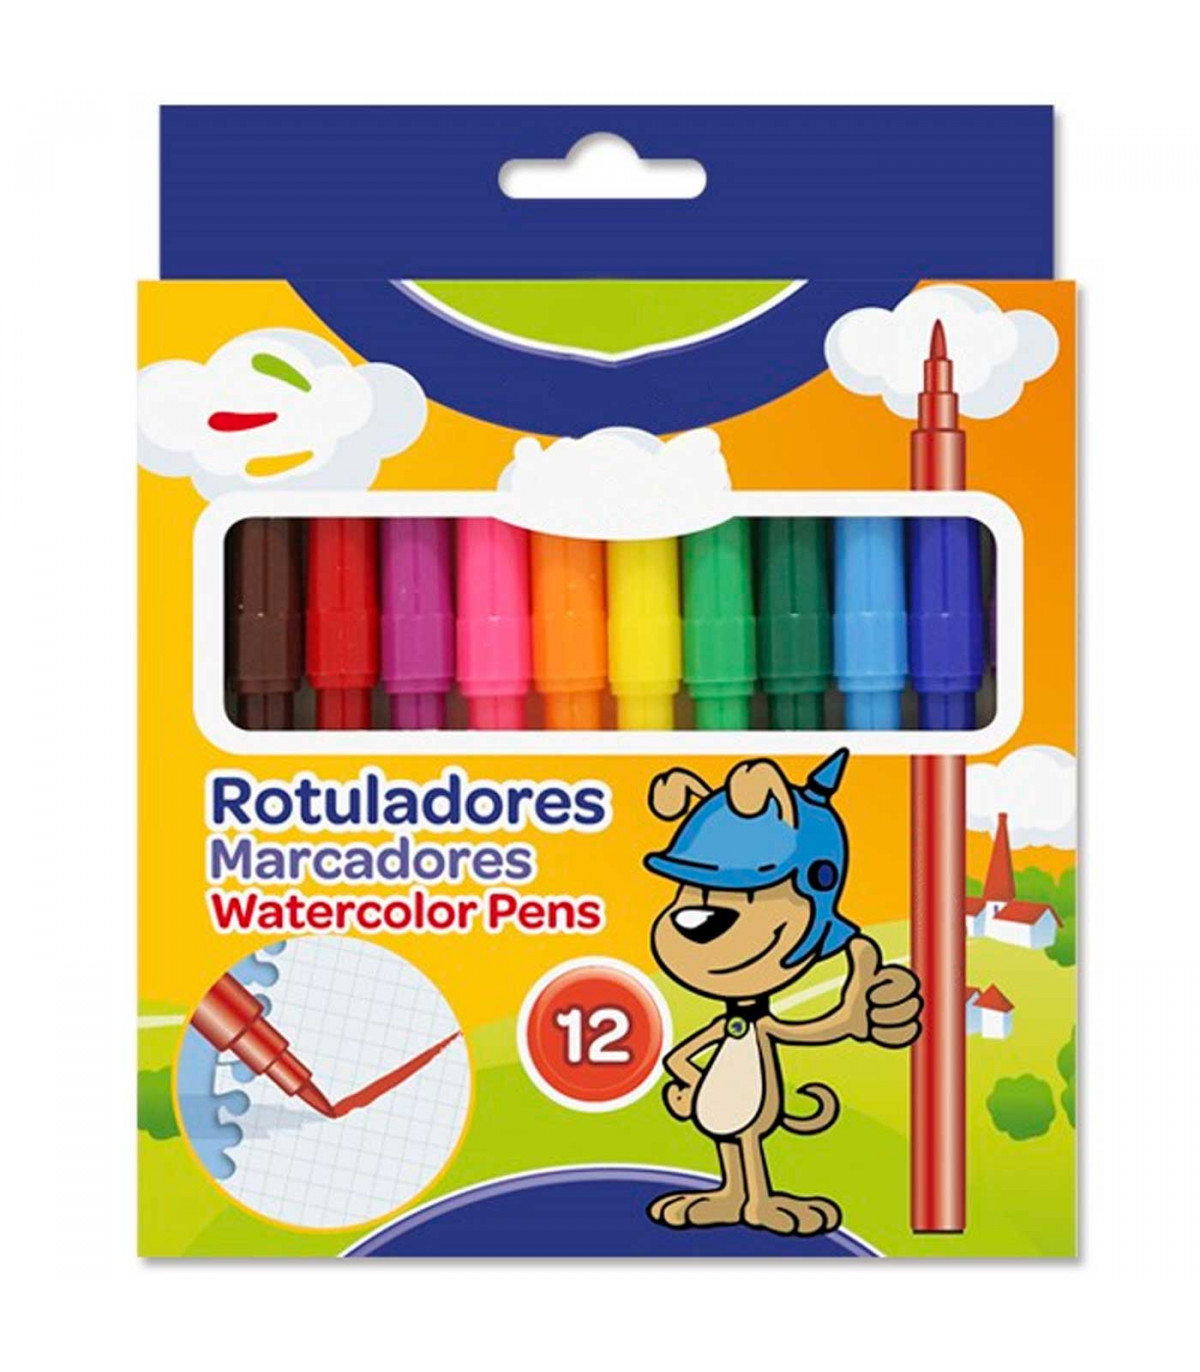 Tradineur - Caja de 12 rotuladores finos de colores para niños